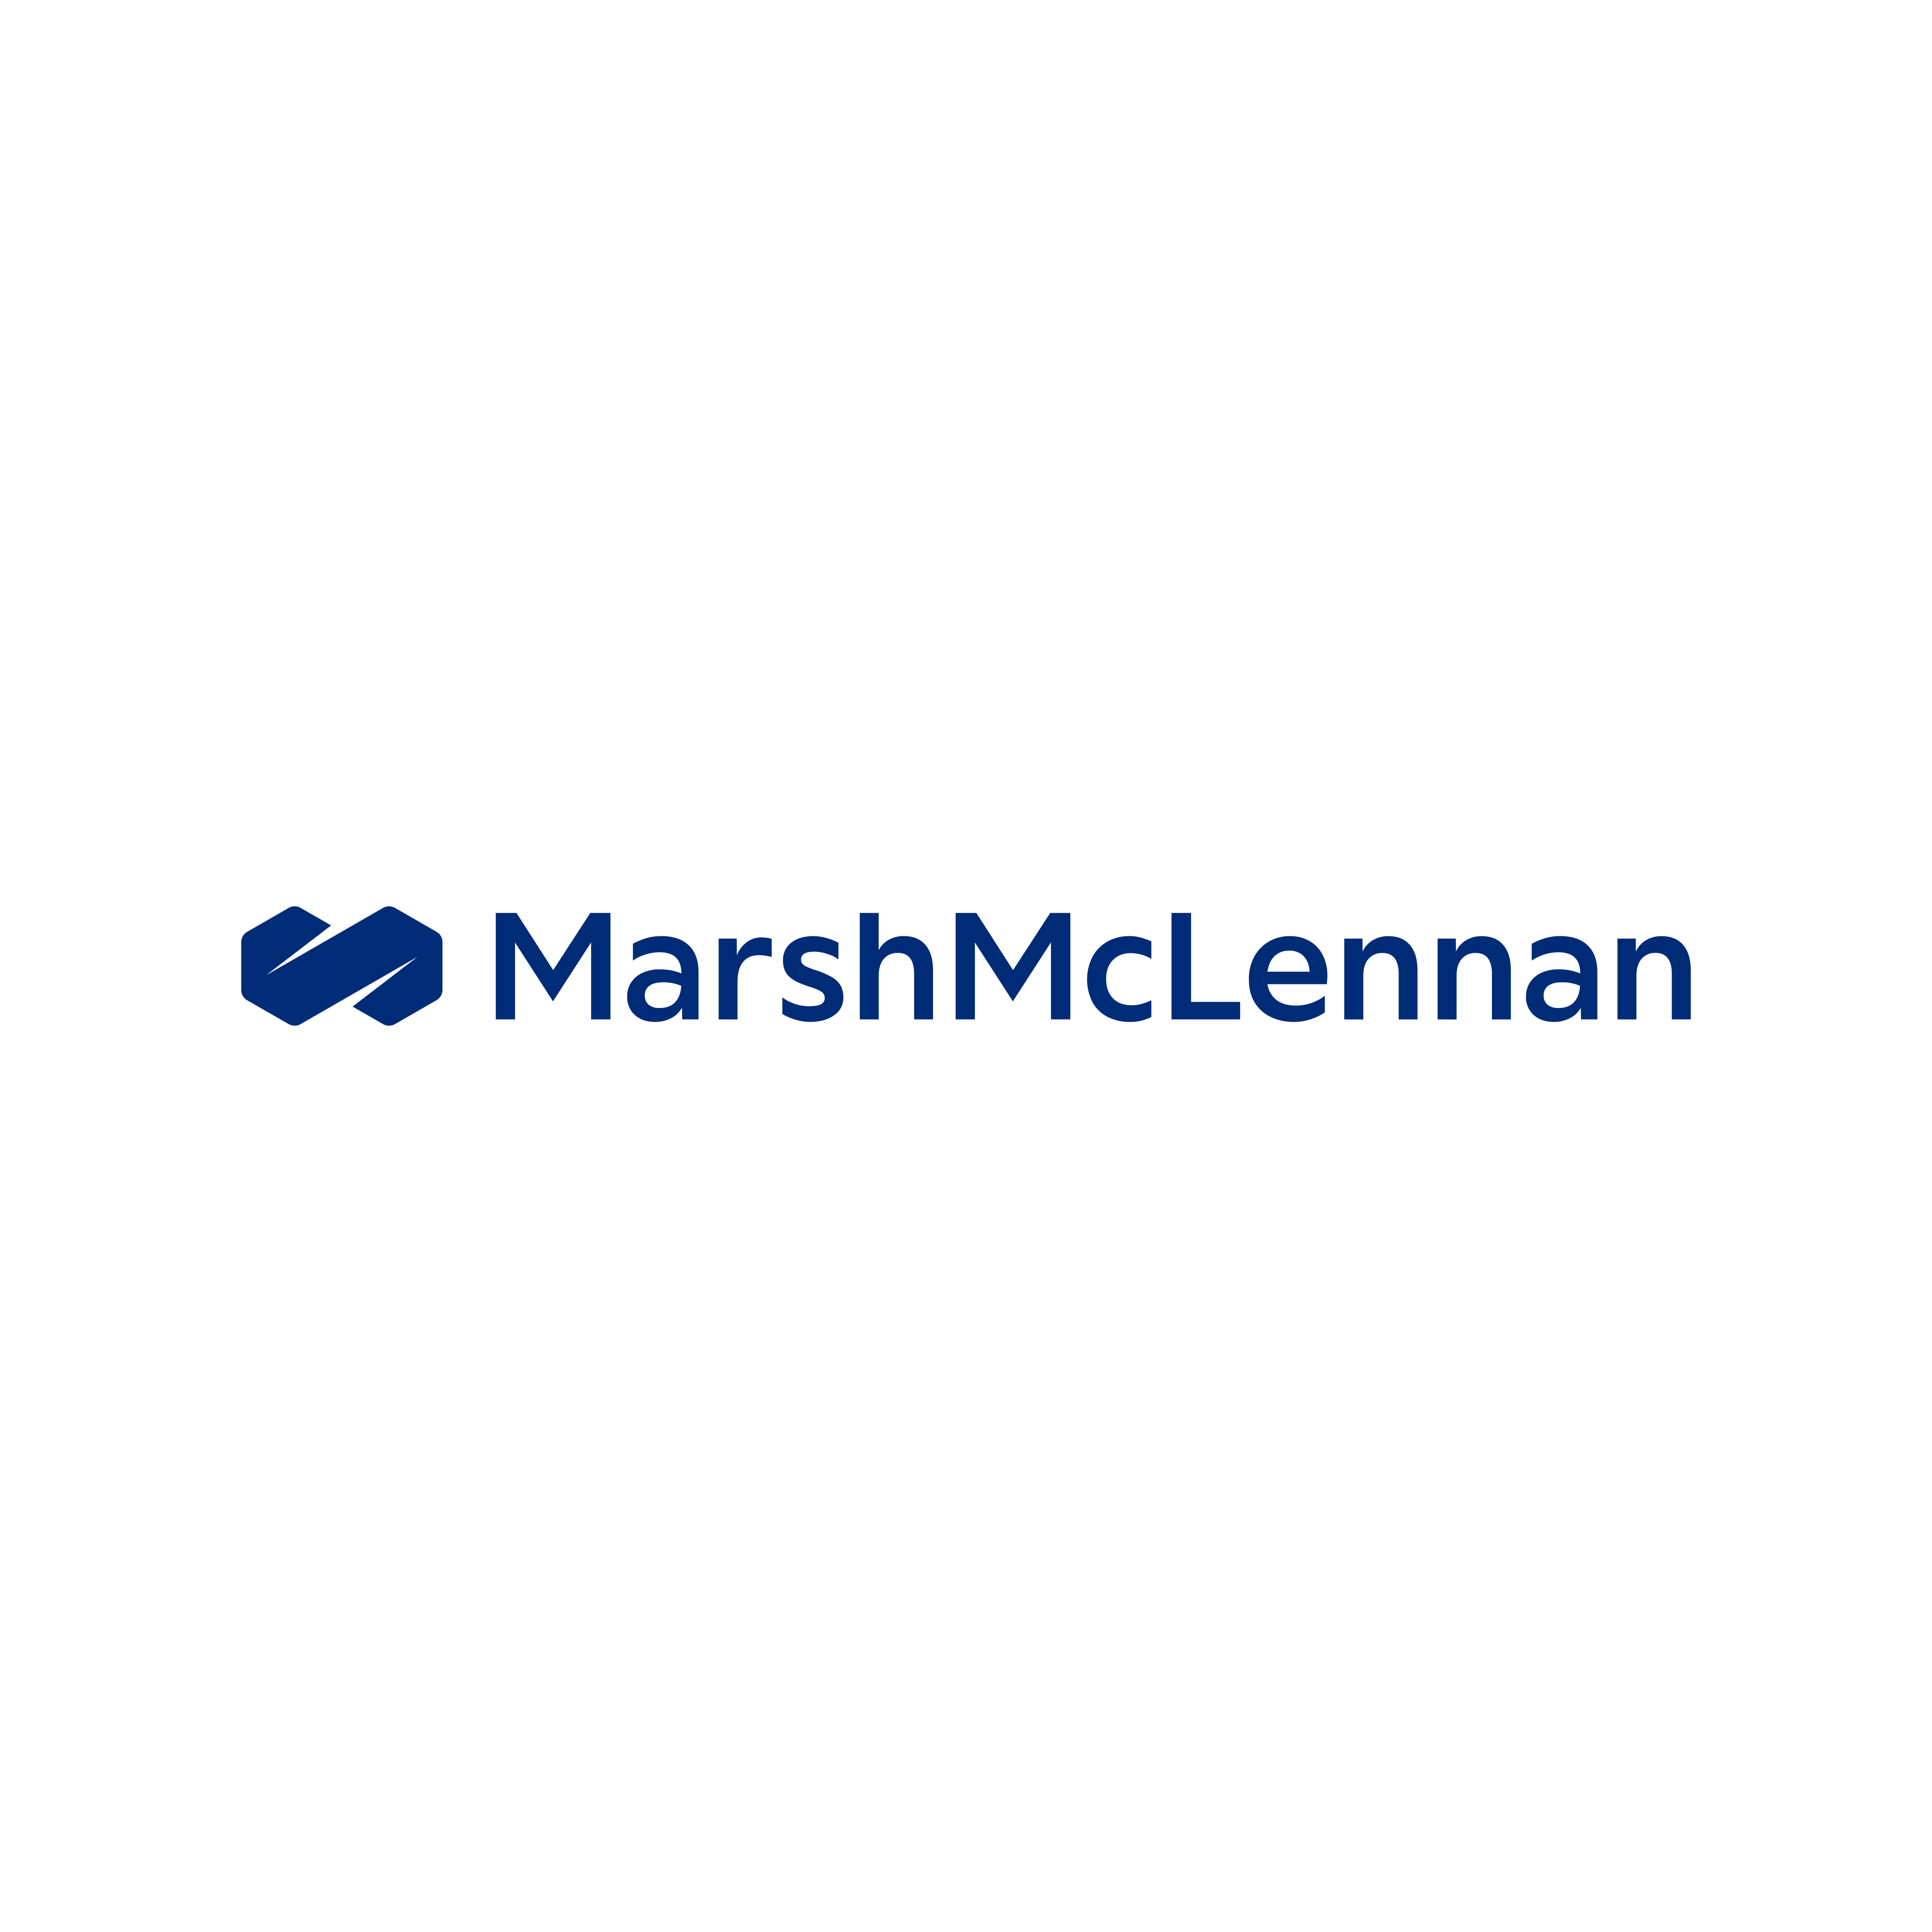 Marsh & McLennan Logo PNG.